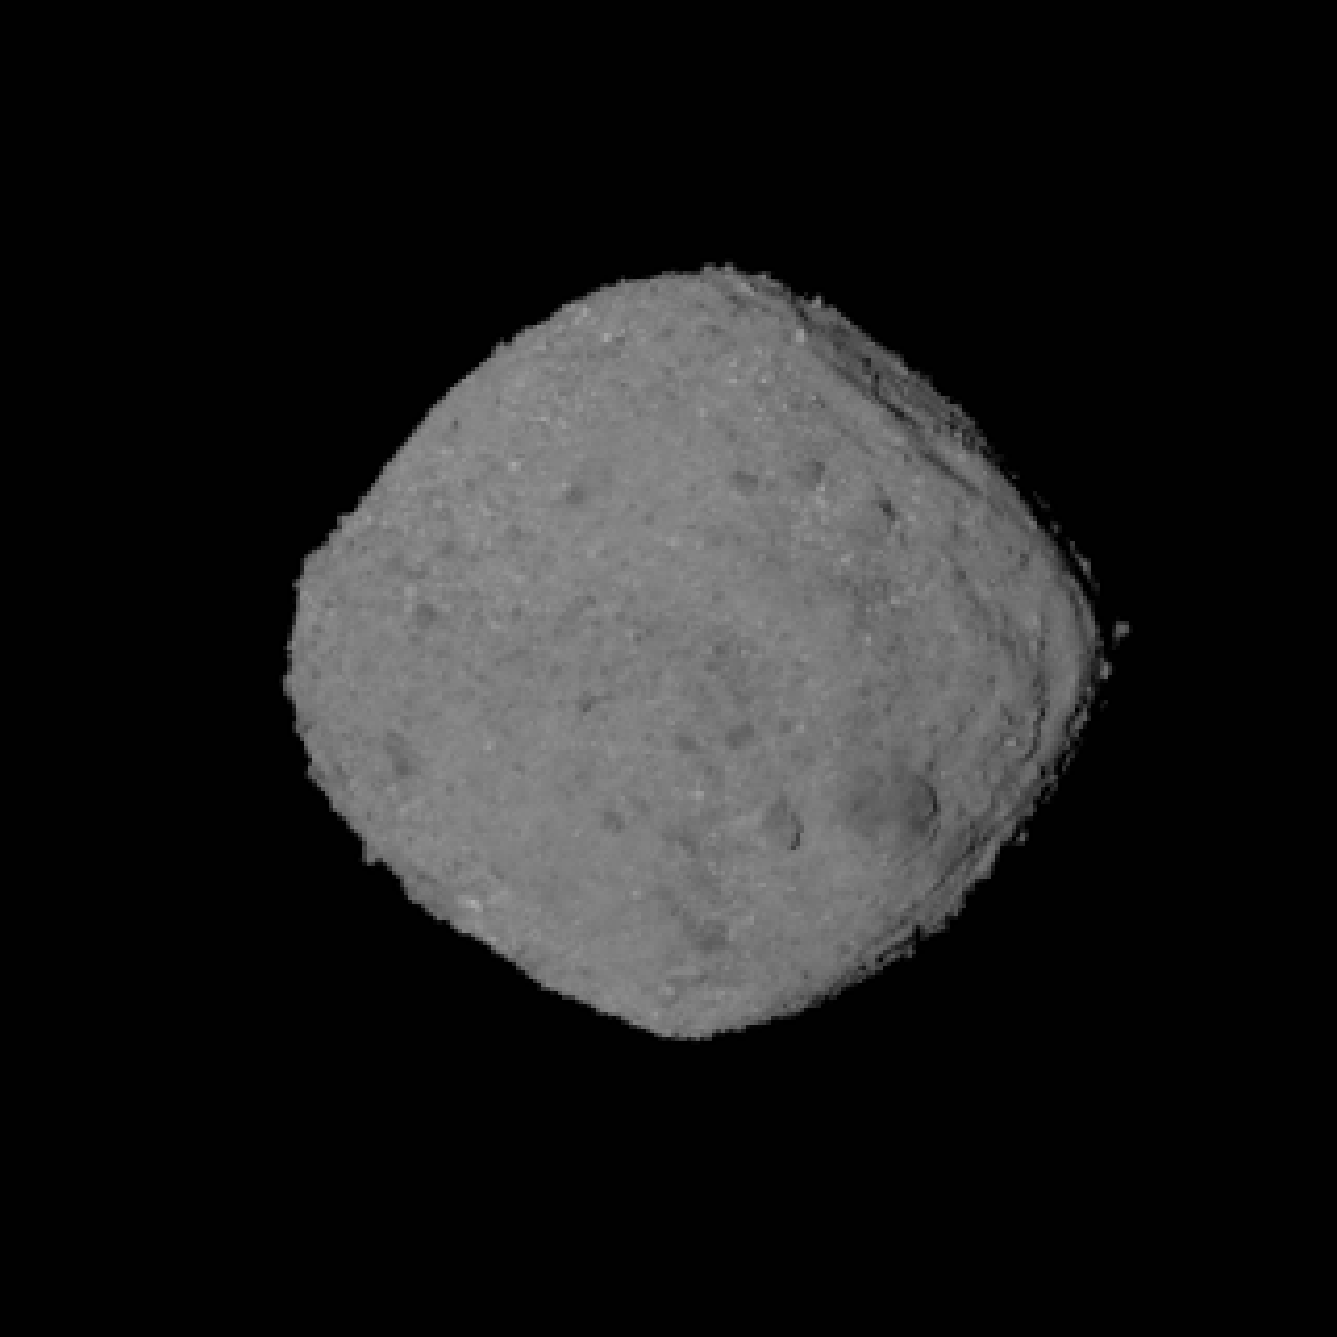 Вращение астероида Бенну глазами OSIRIS-REx